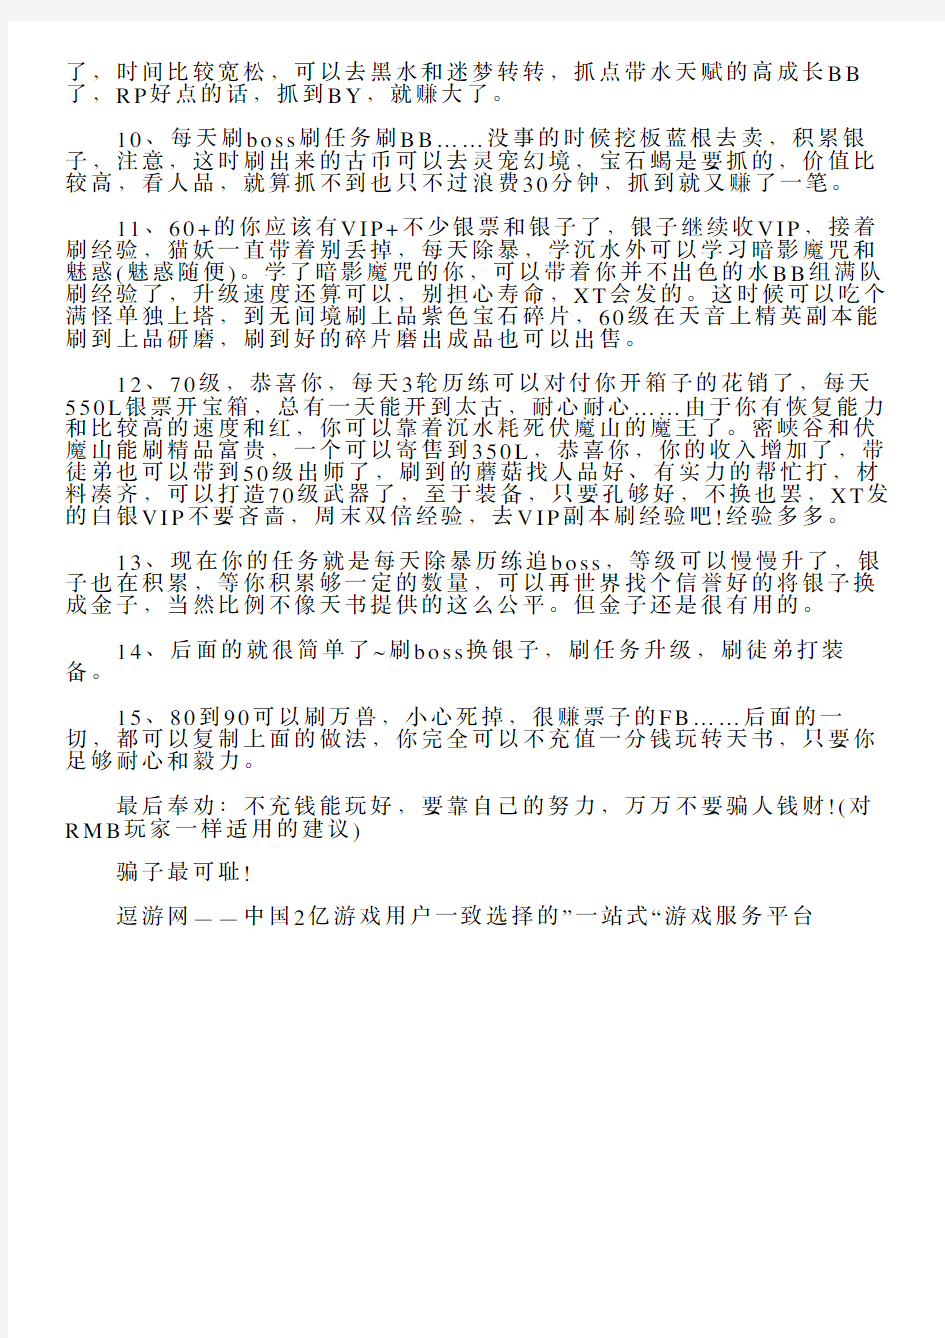 天书奇谈对非RMB玩家的十五条建议